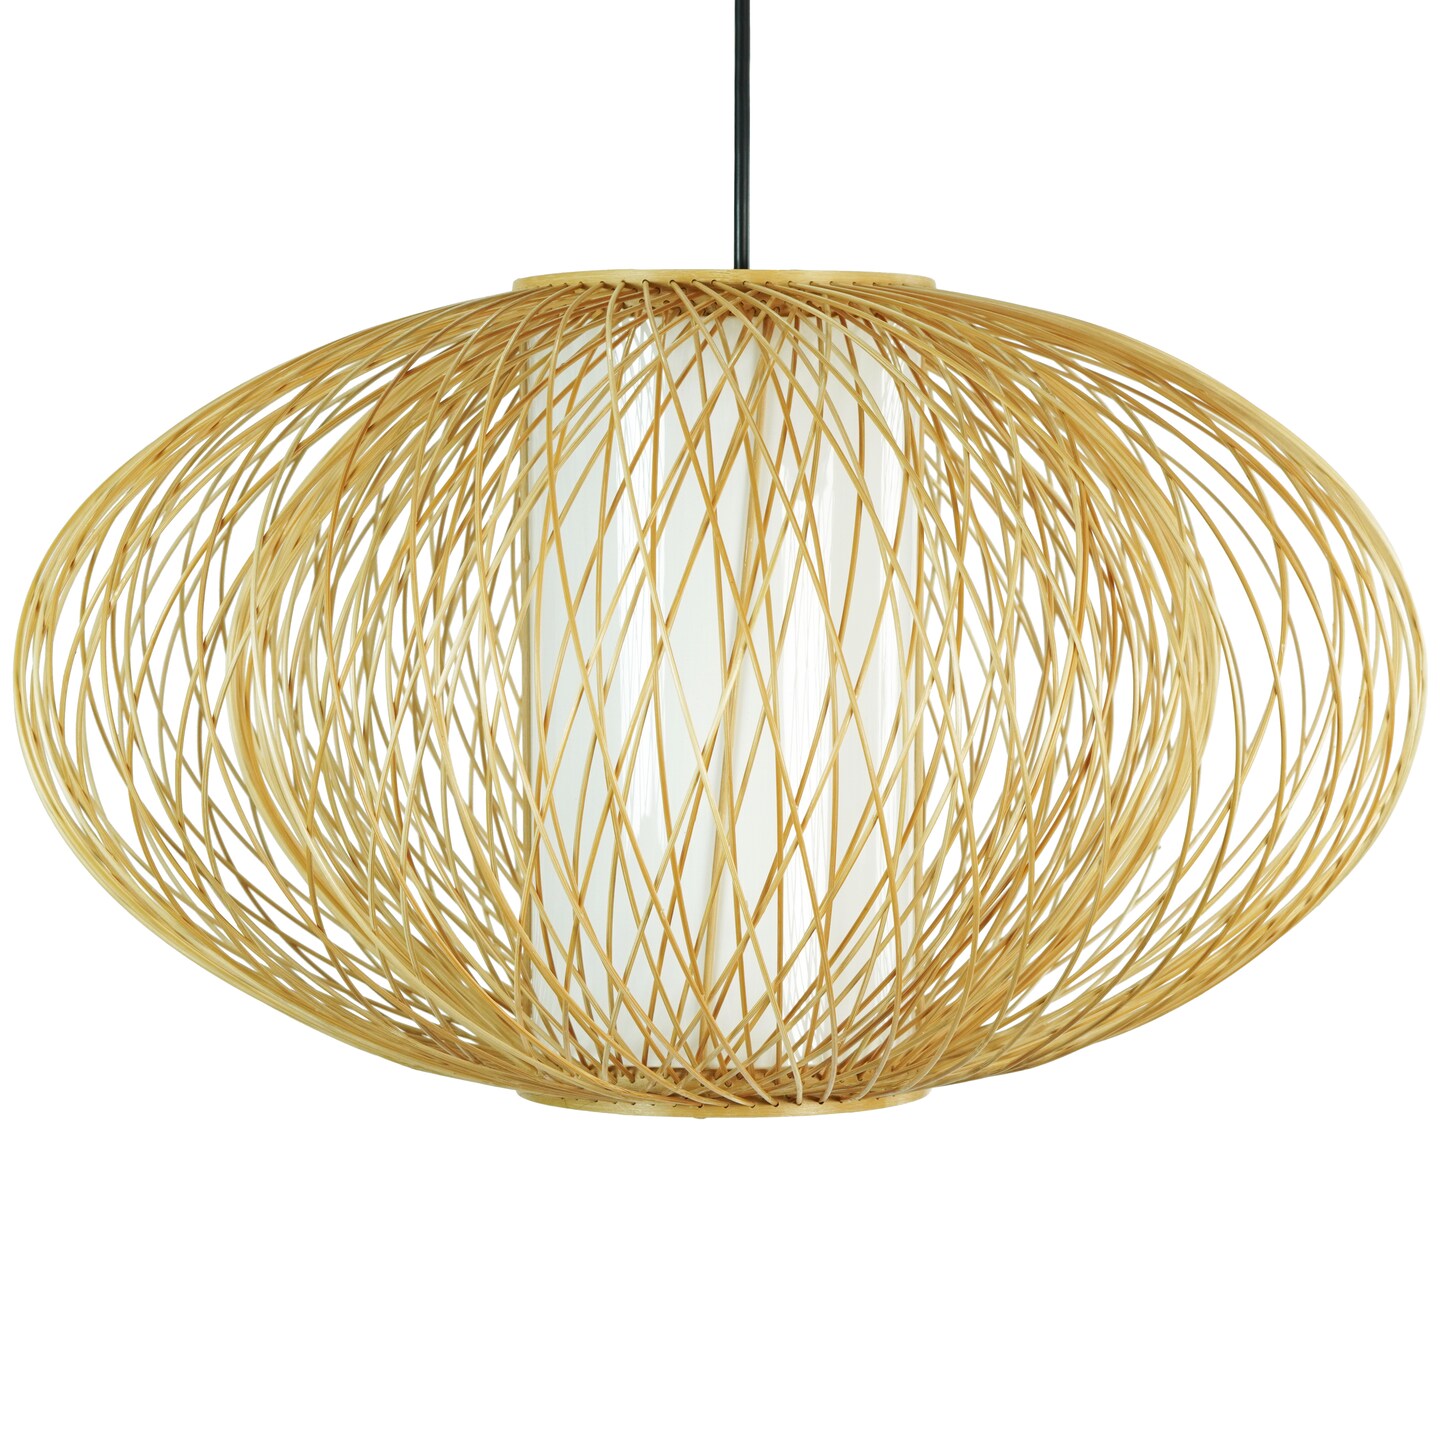 Handmade Modern Round Bamboo Wicker Rattan Lamp Hanging Light Shade